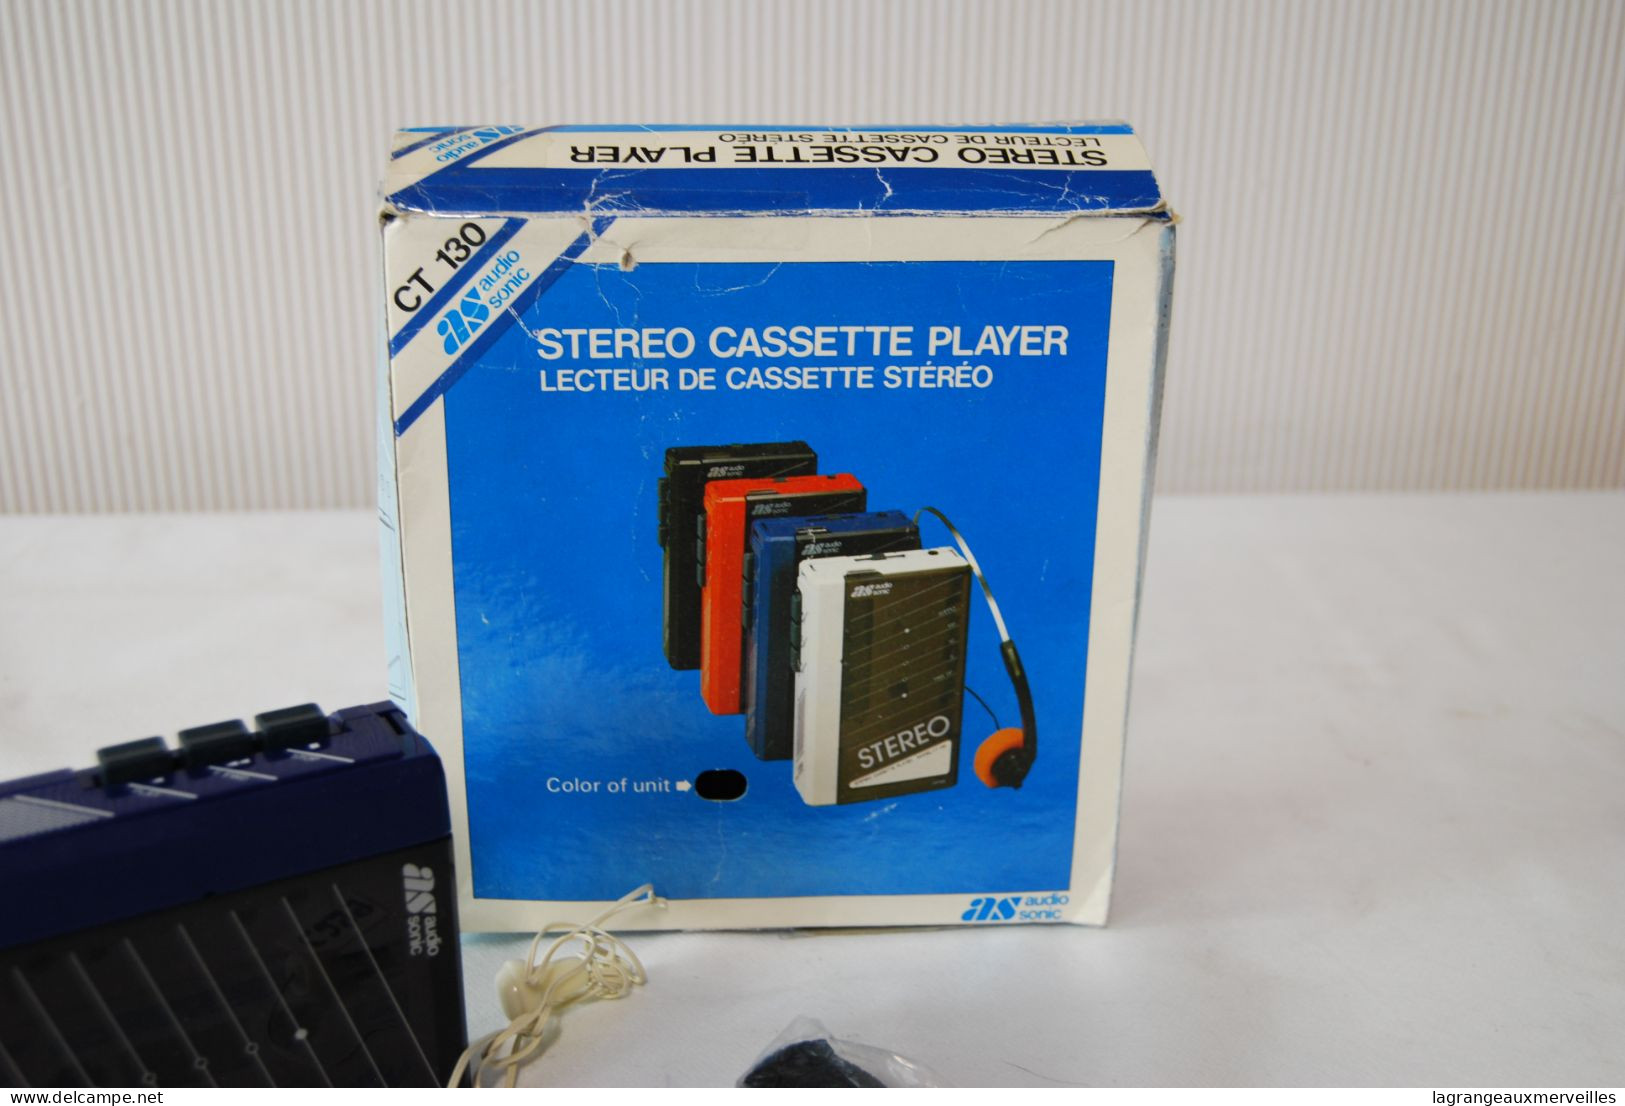 Cassettes audio - C299 Ancien lecteur cassette audio - vintage - Walkman